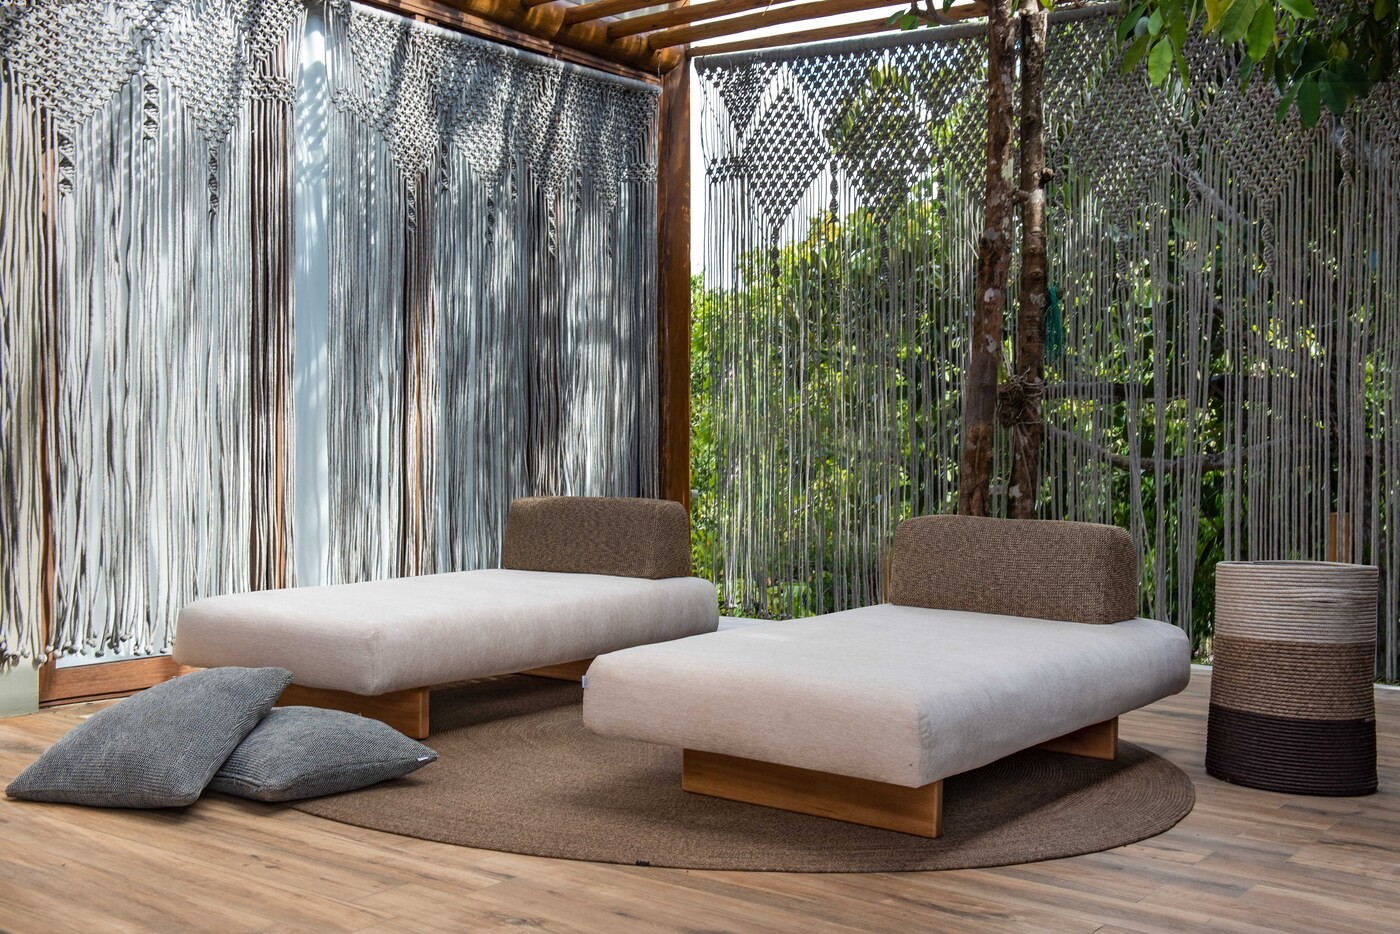 Nova coleção de mobiliário outdoor tem design inspirado na cultura latina (Foto: Reinaldo Giarola)